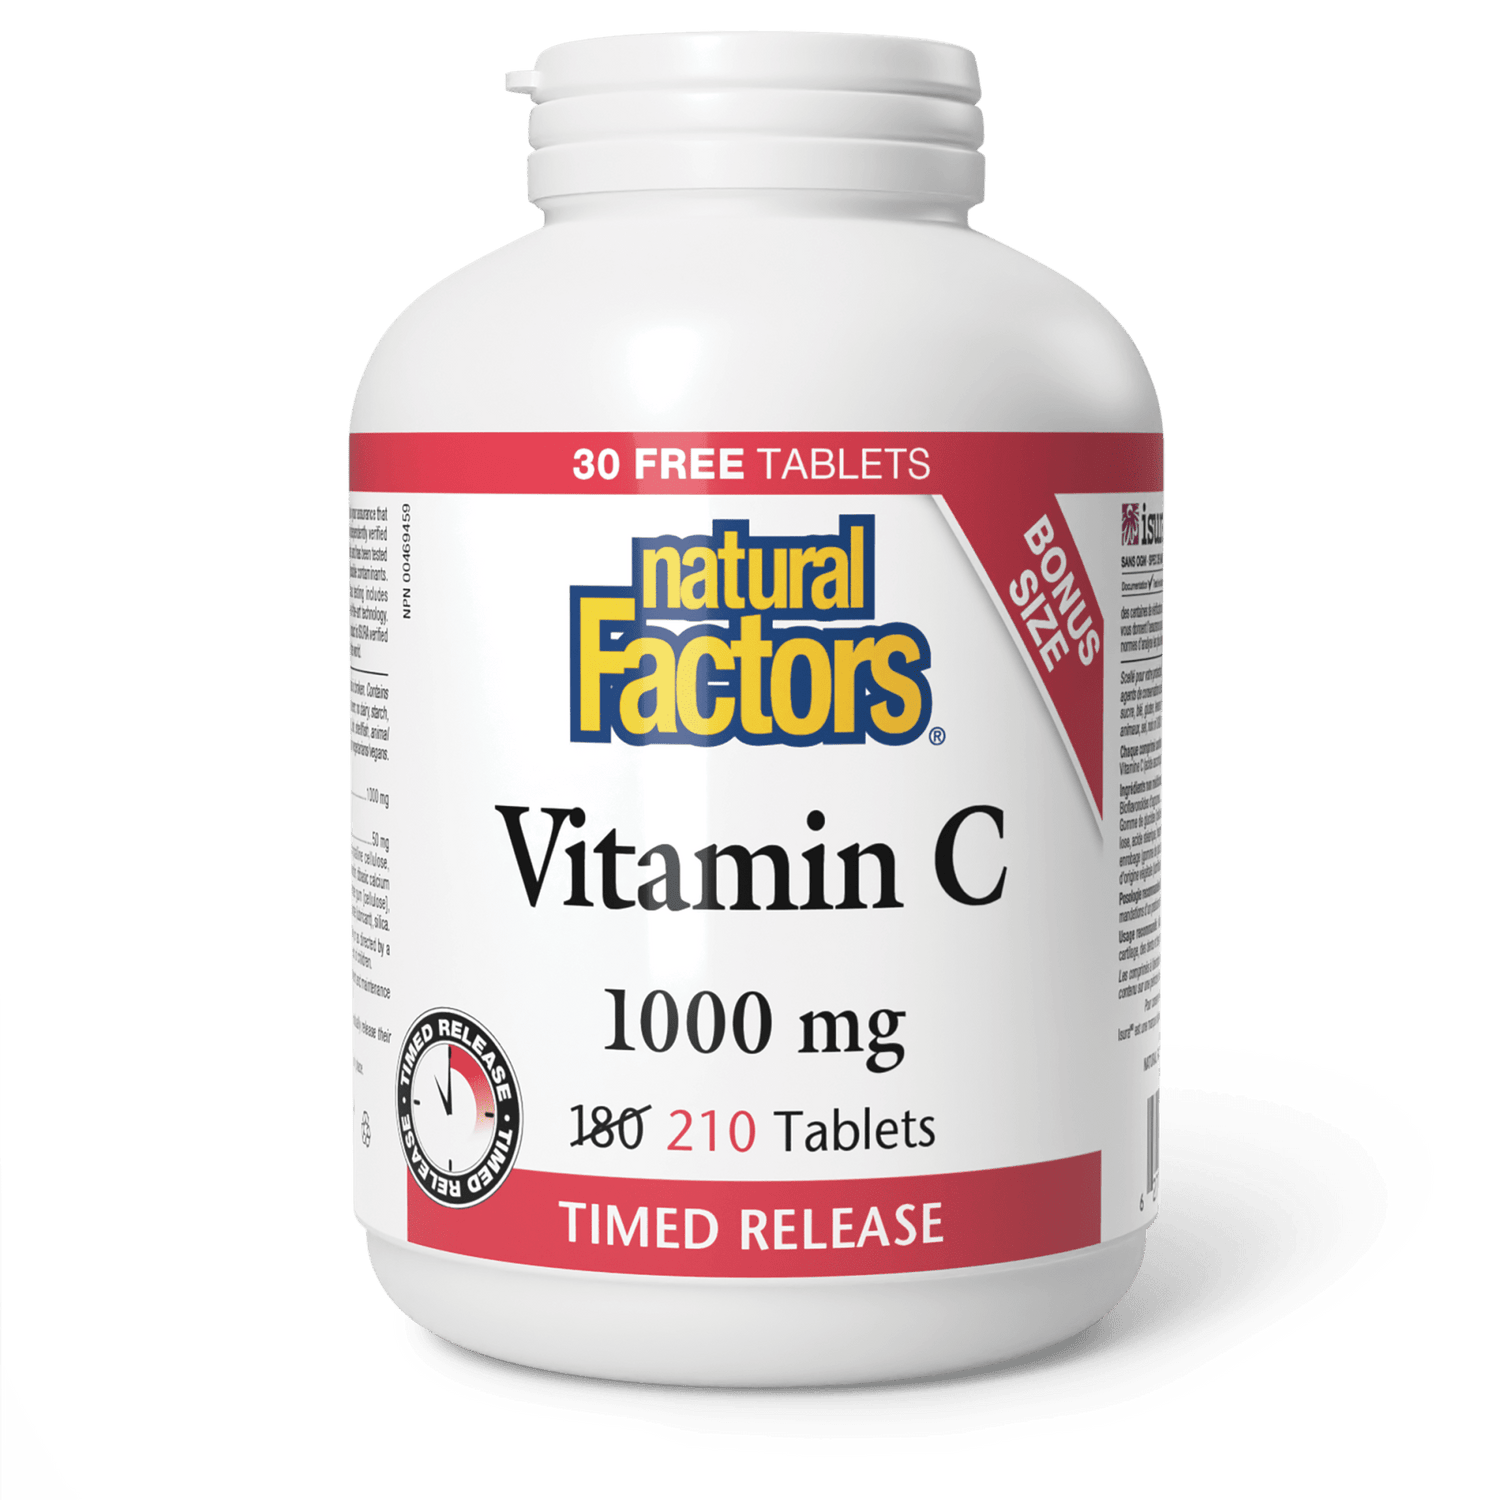 Vitamin C Time Release 1000 mg, Natural Factors|v|image|8132